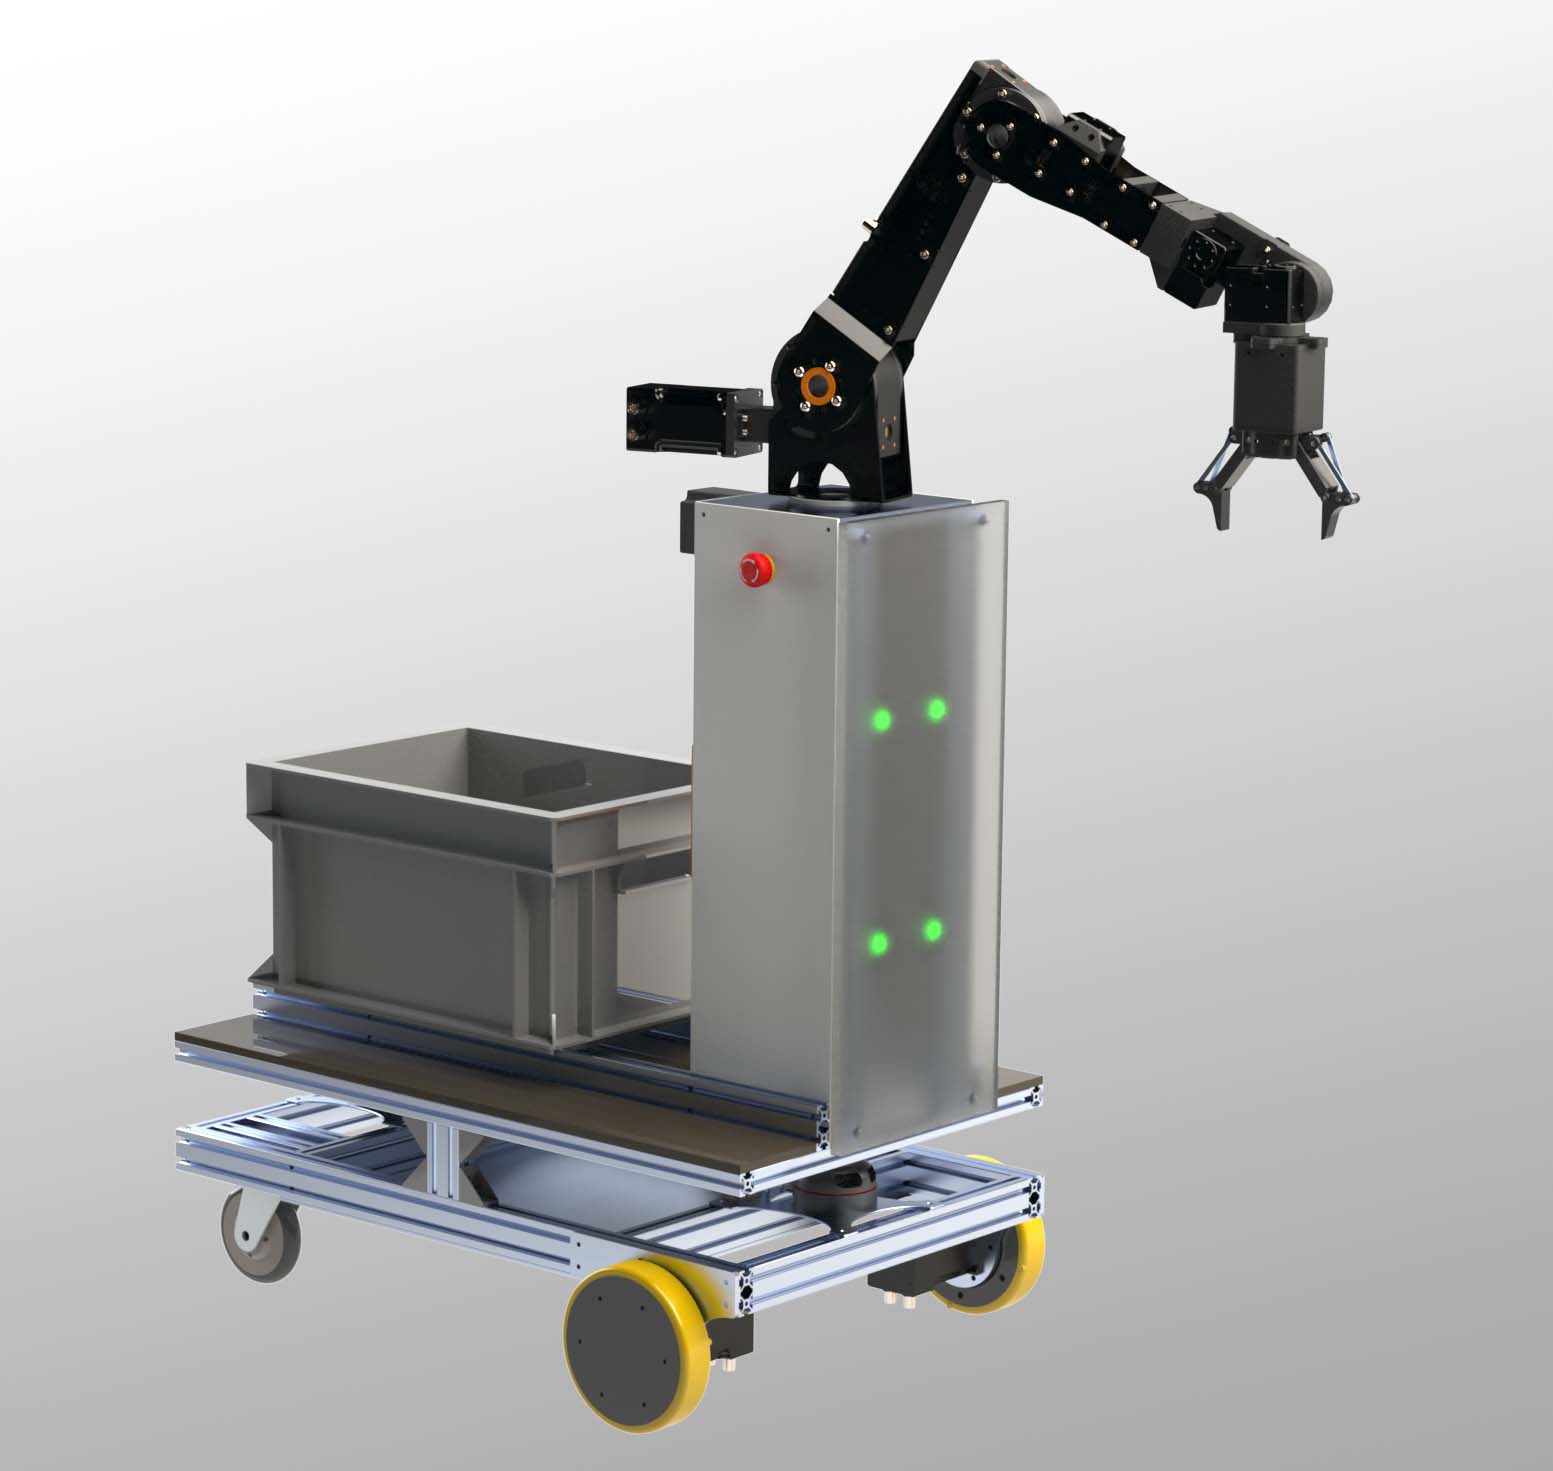 Middle size mobile robot platform